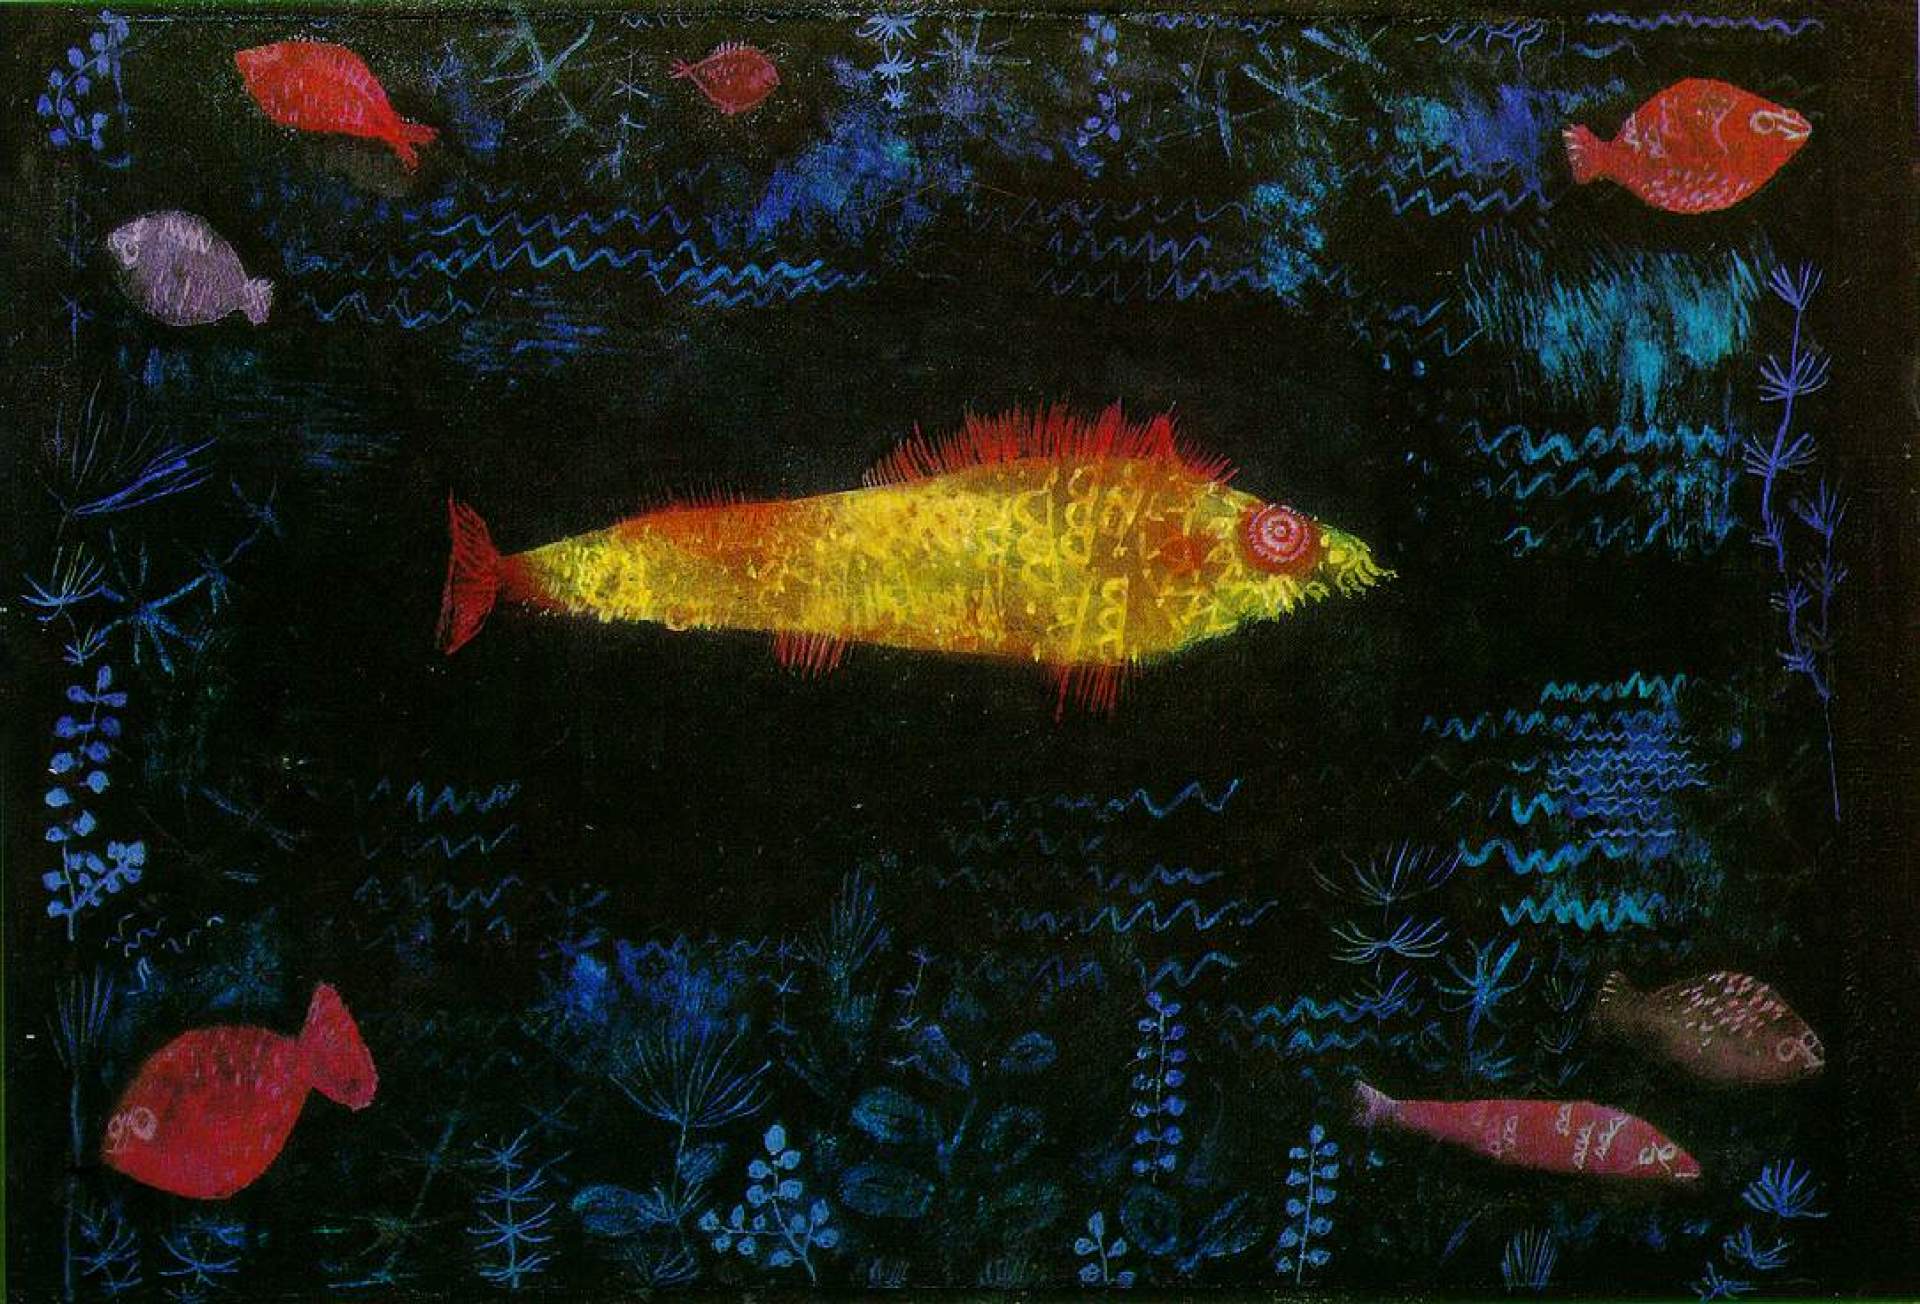 Paul Klee: Art Beyond Boundaries